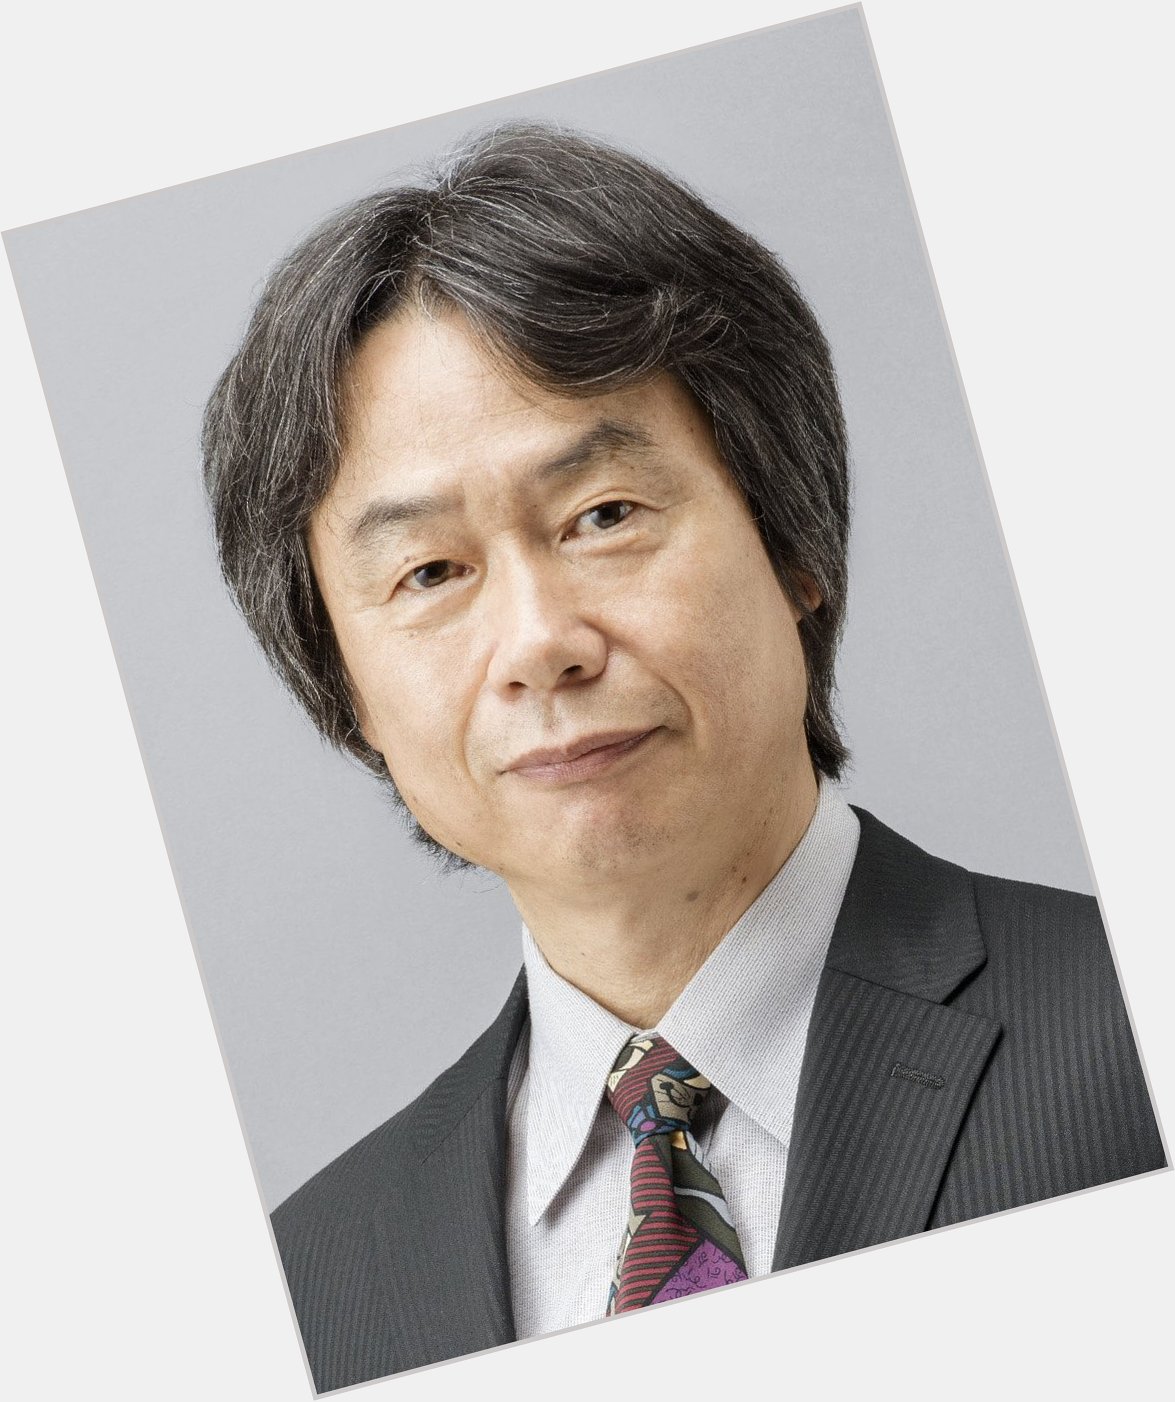 Happy 69th birthday to Shigeru Miyamoto! 